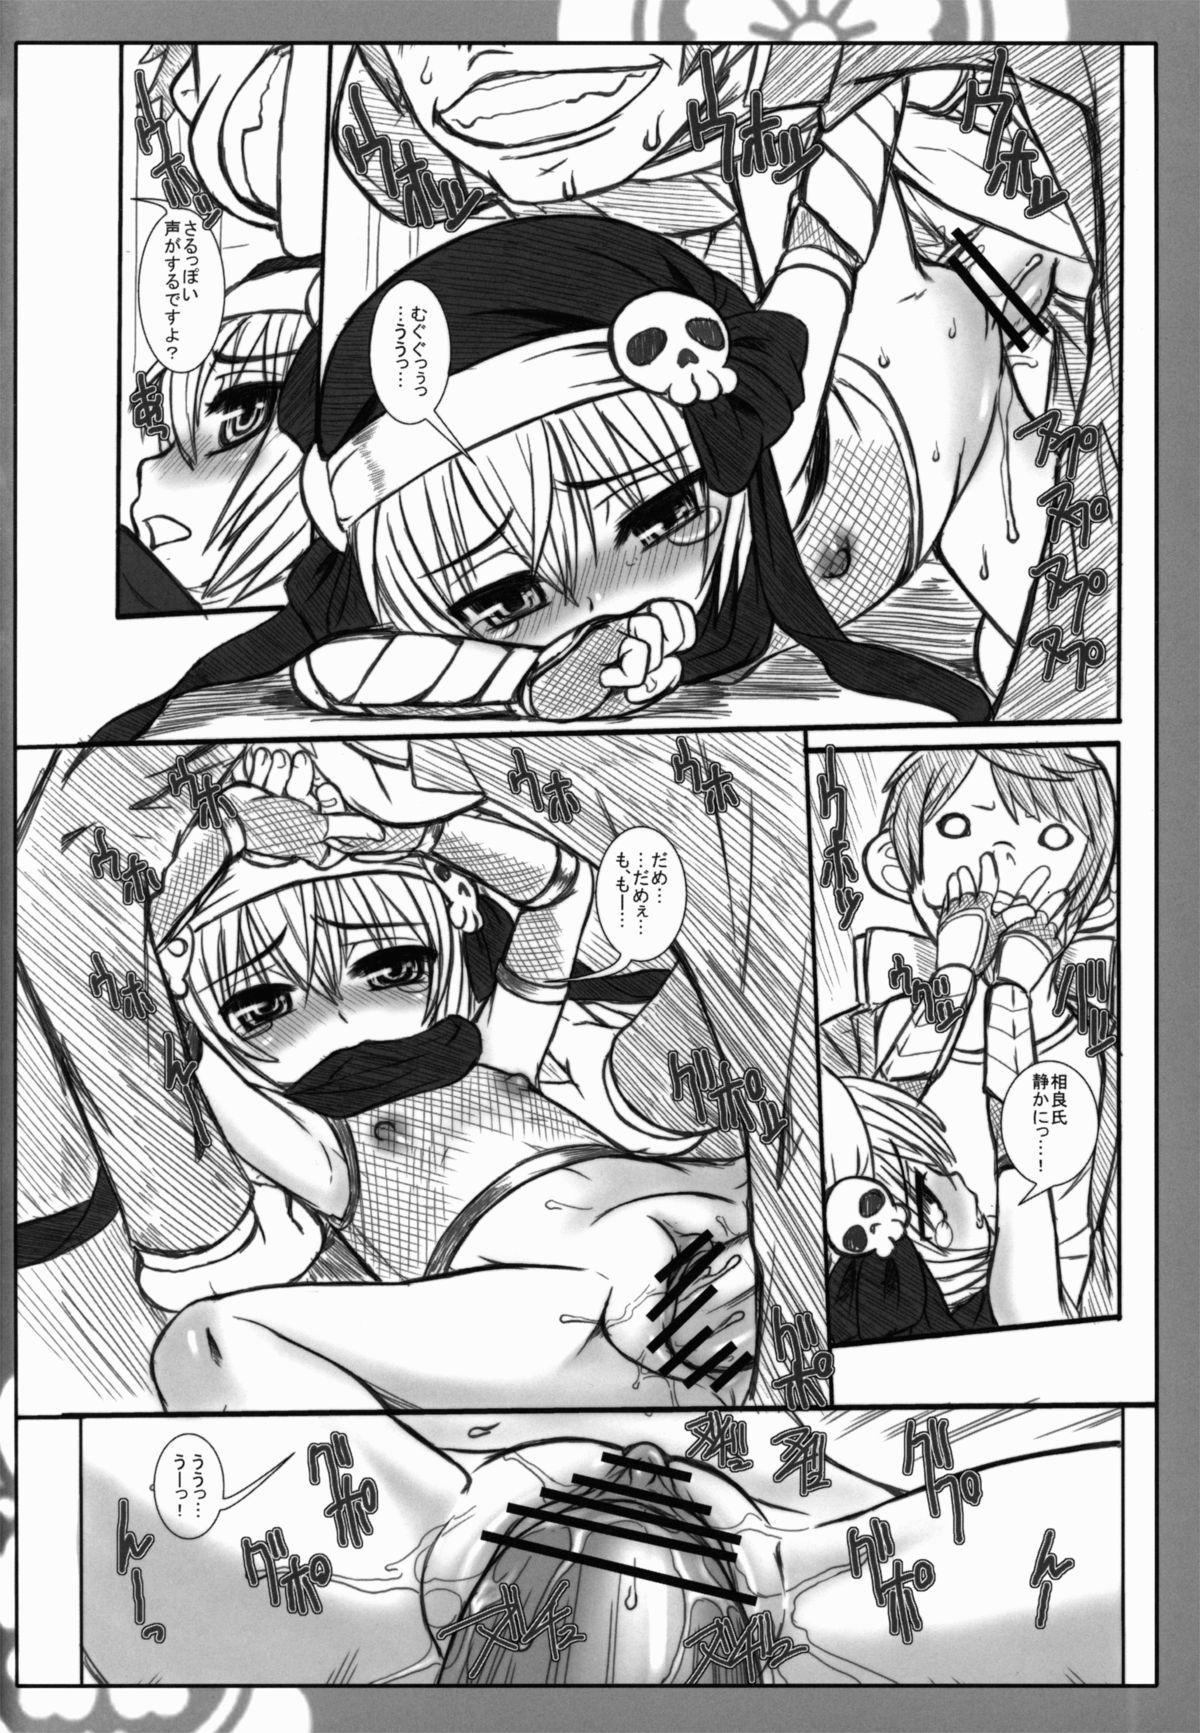 Cums GOE2 GOEMON!! - Oda nobuna no yabou Punk - Page 12